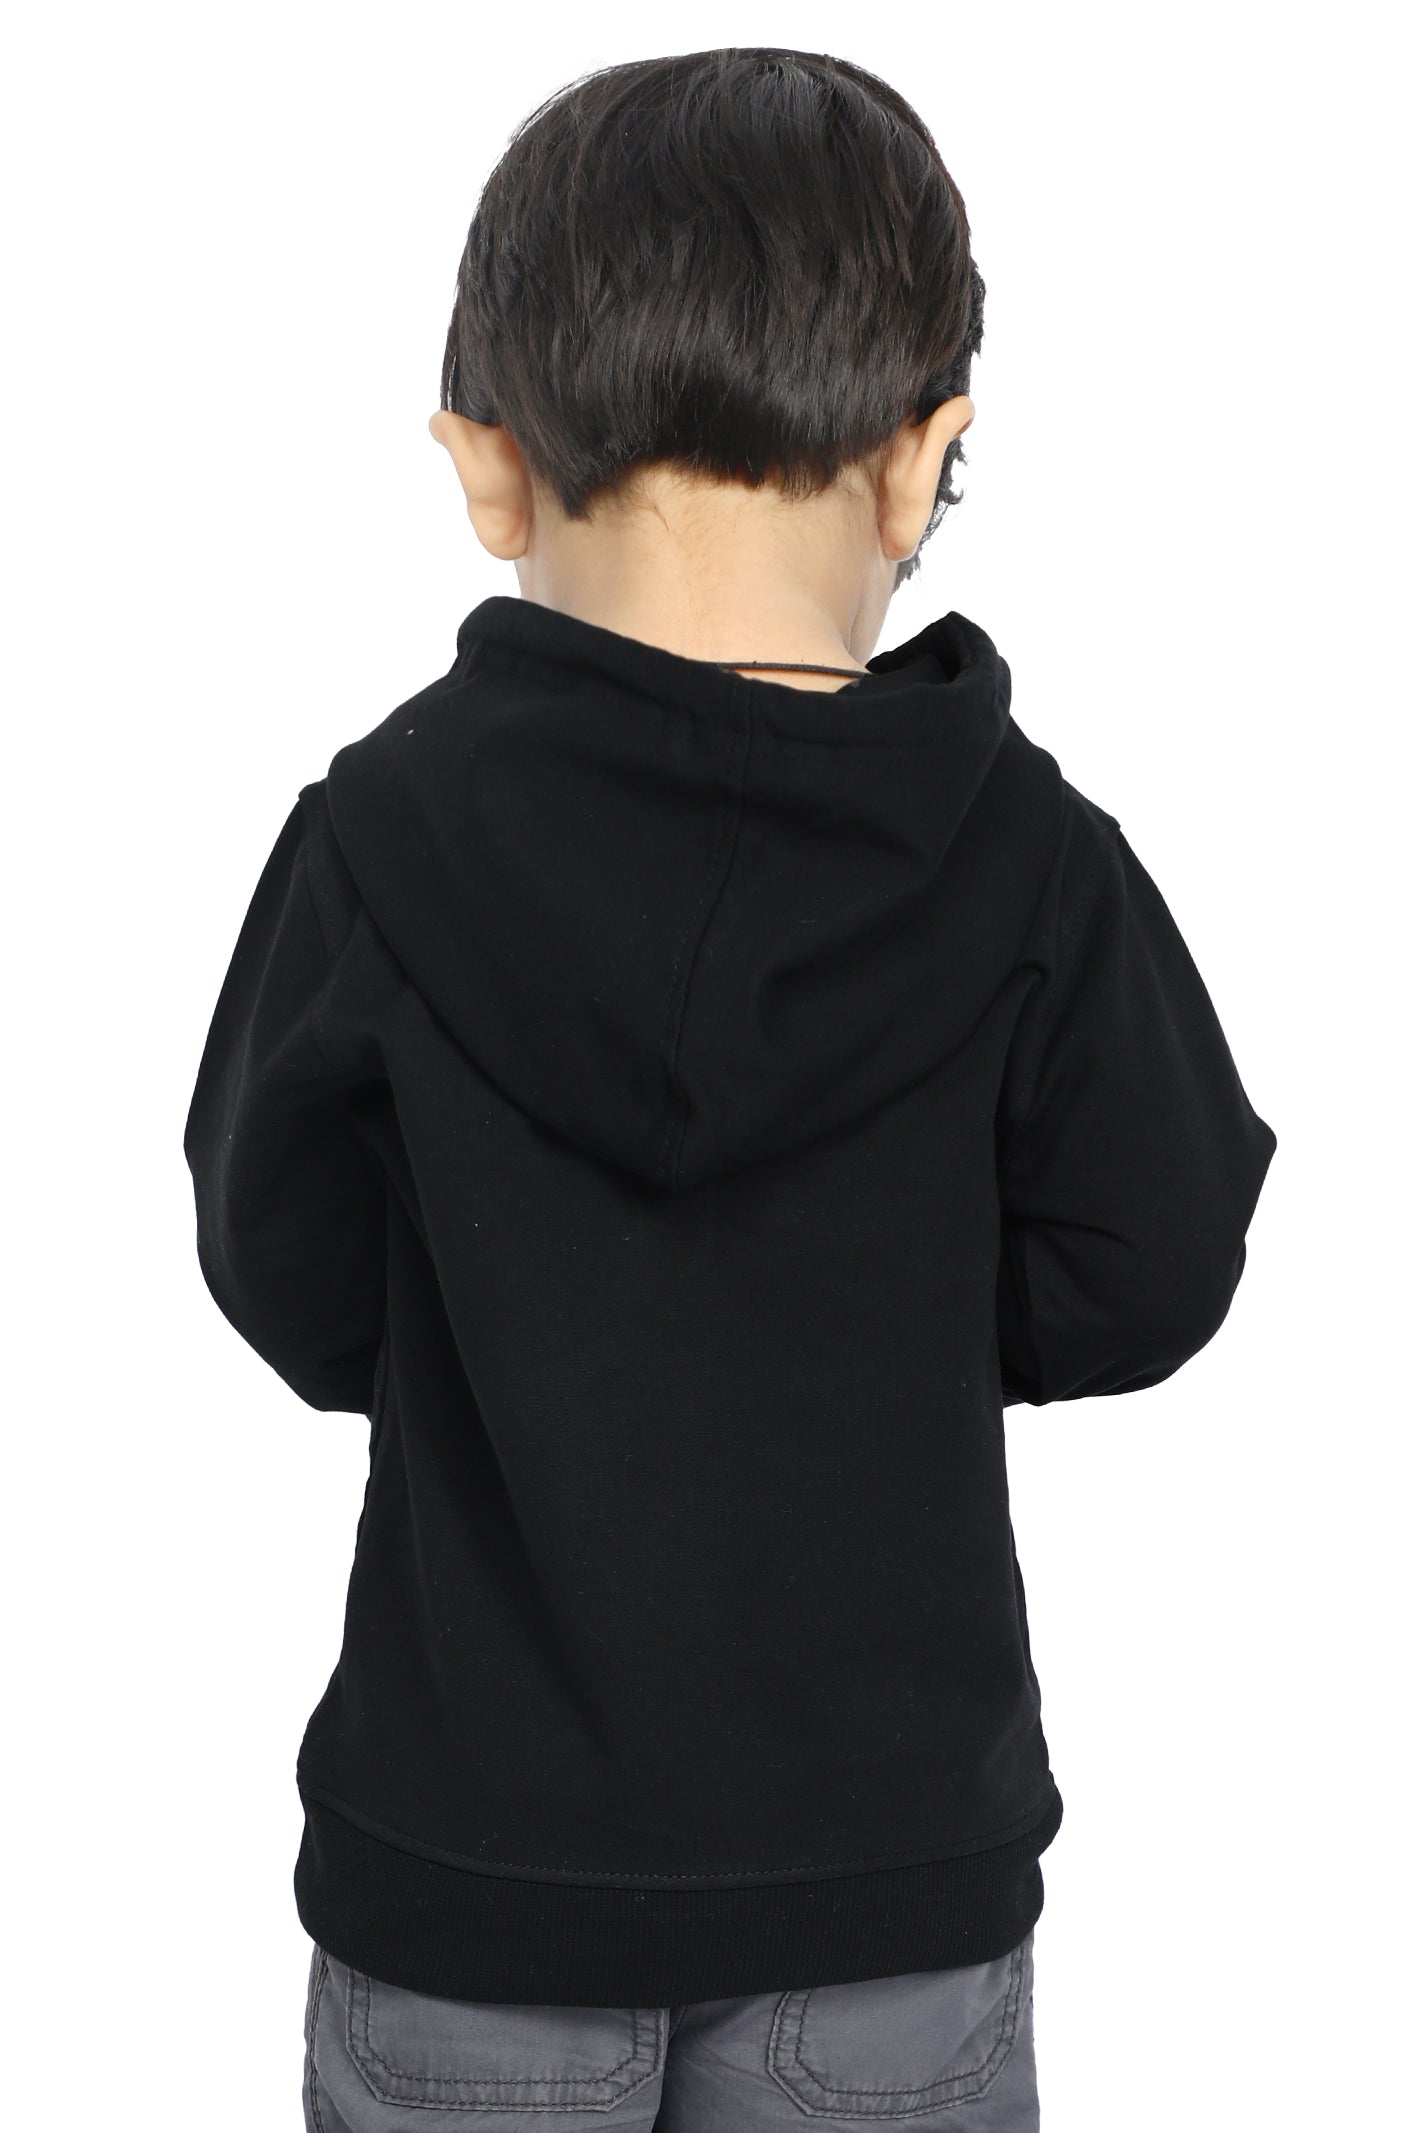 Boys Toddler Hoodie In Black SKU: IBI-0003-BLACK - Diners